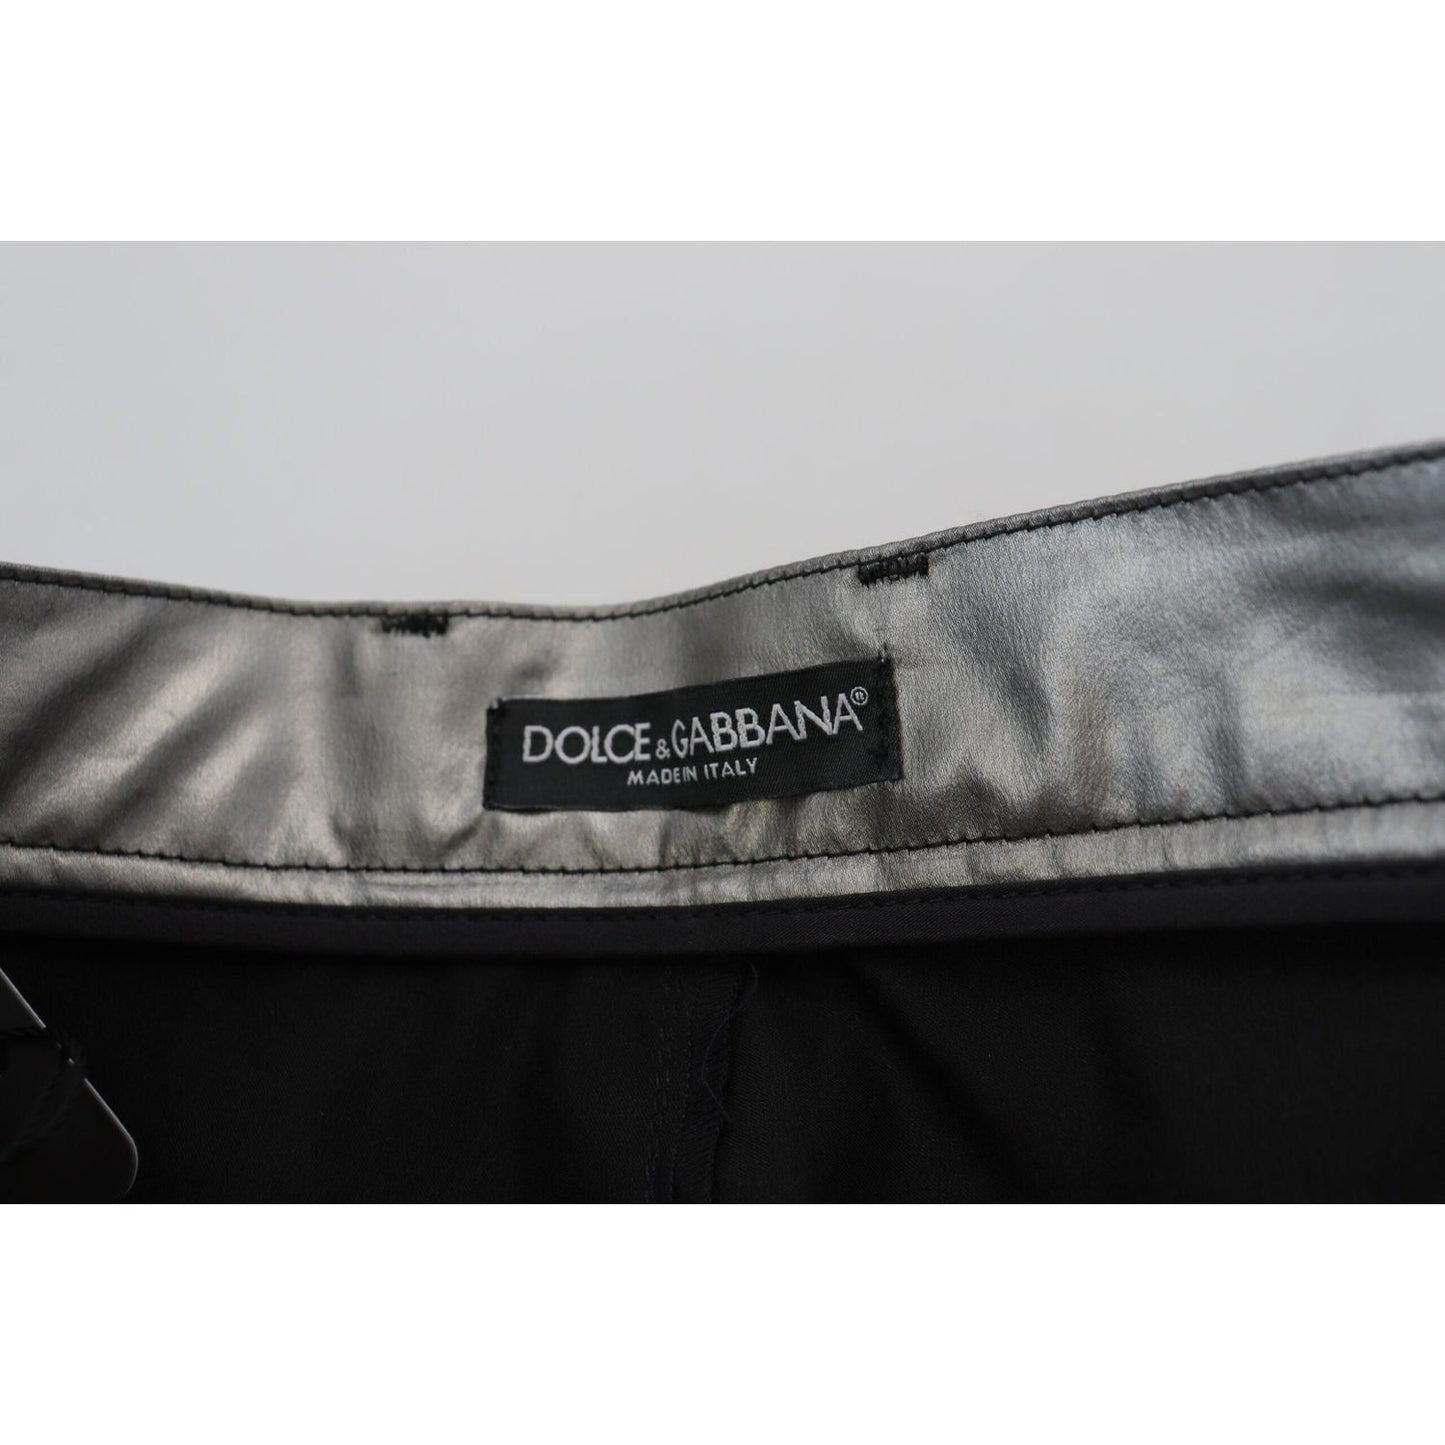 Dolce & Gabbana Elegant High Waist Skinny Pants in Silver metallic-silver-high-waist-skinny-pants IMG_2391-scaled-d049e1f3-963.jpg